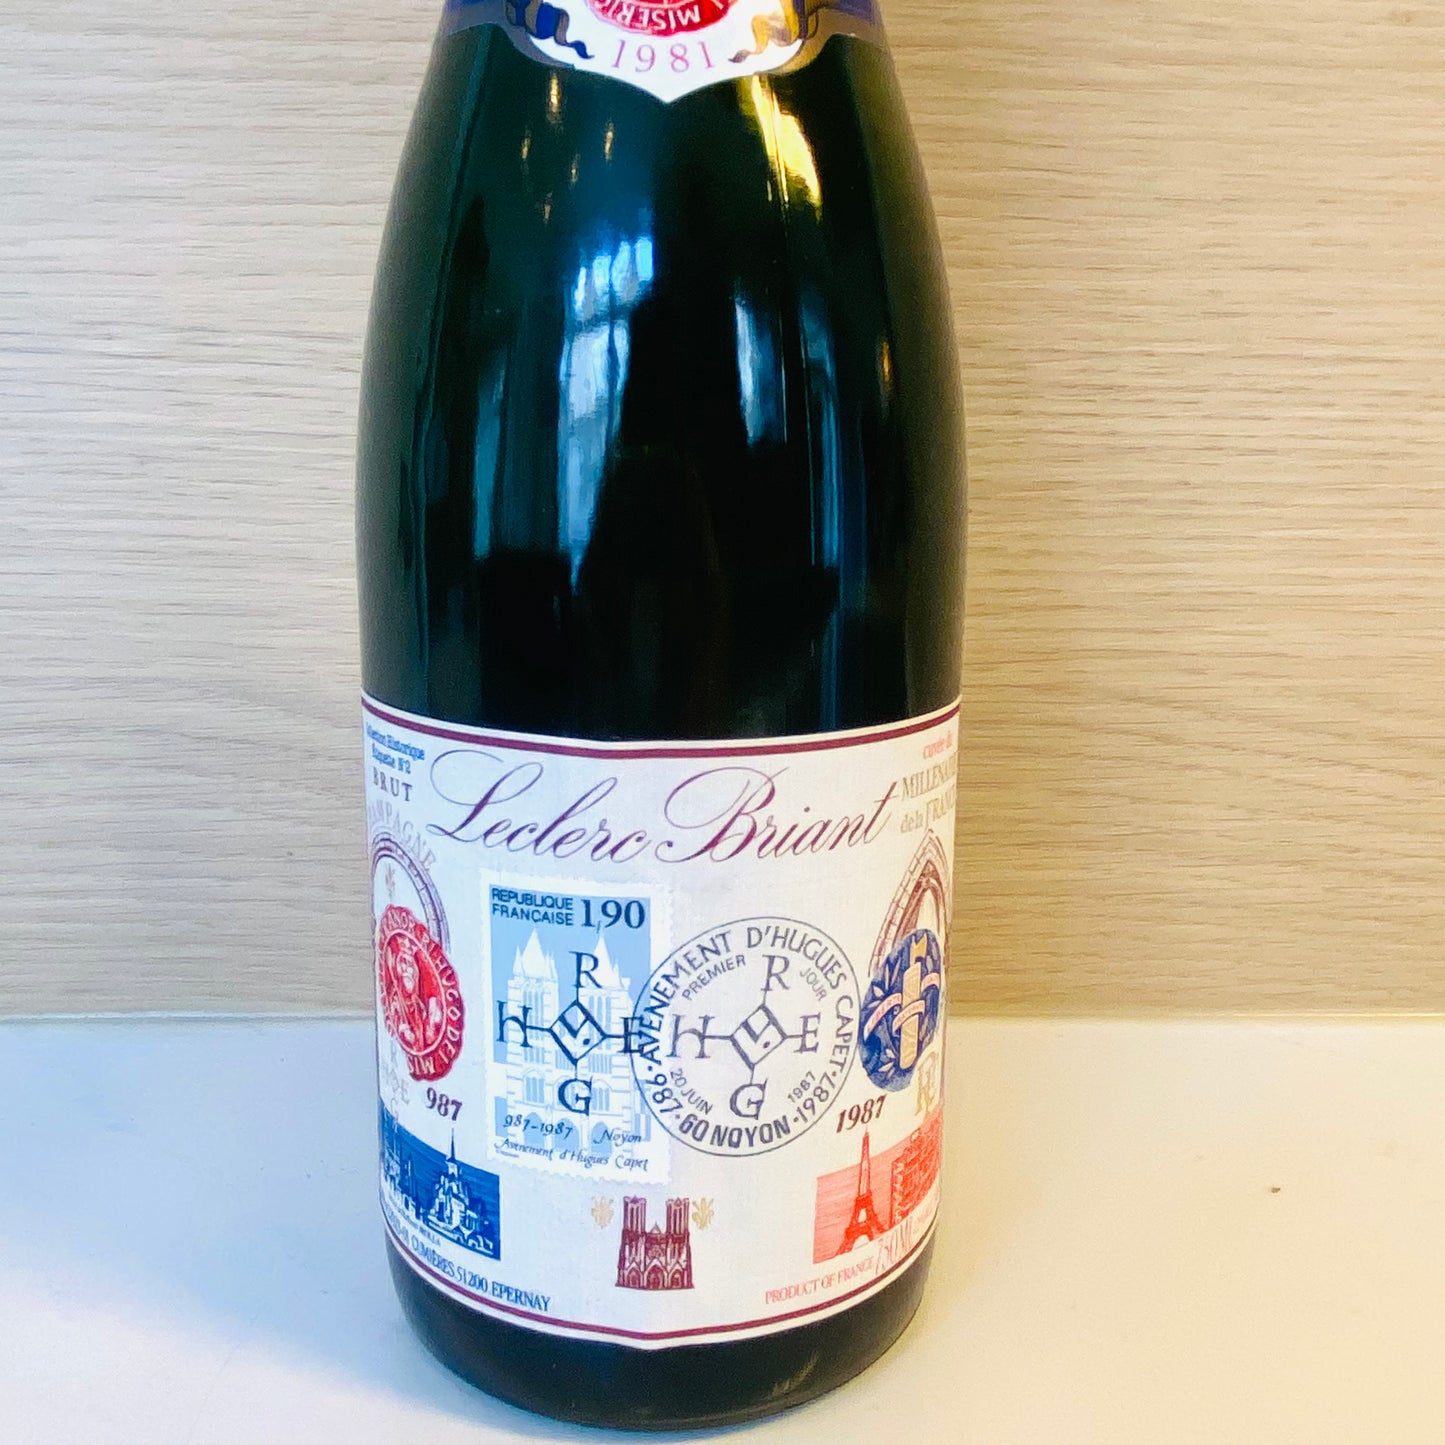 Cuvée du millénaire 1981 Champagne Leclerc Briant - Les Choses Particulières